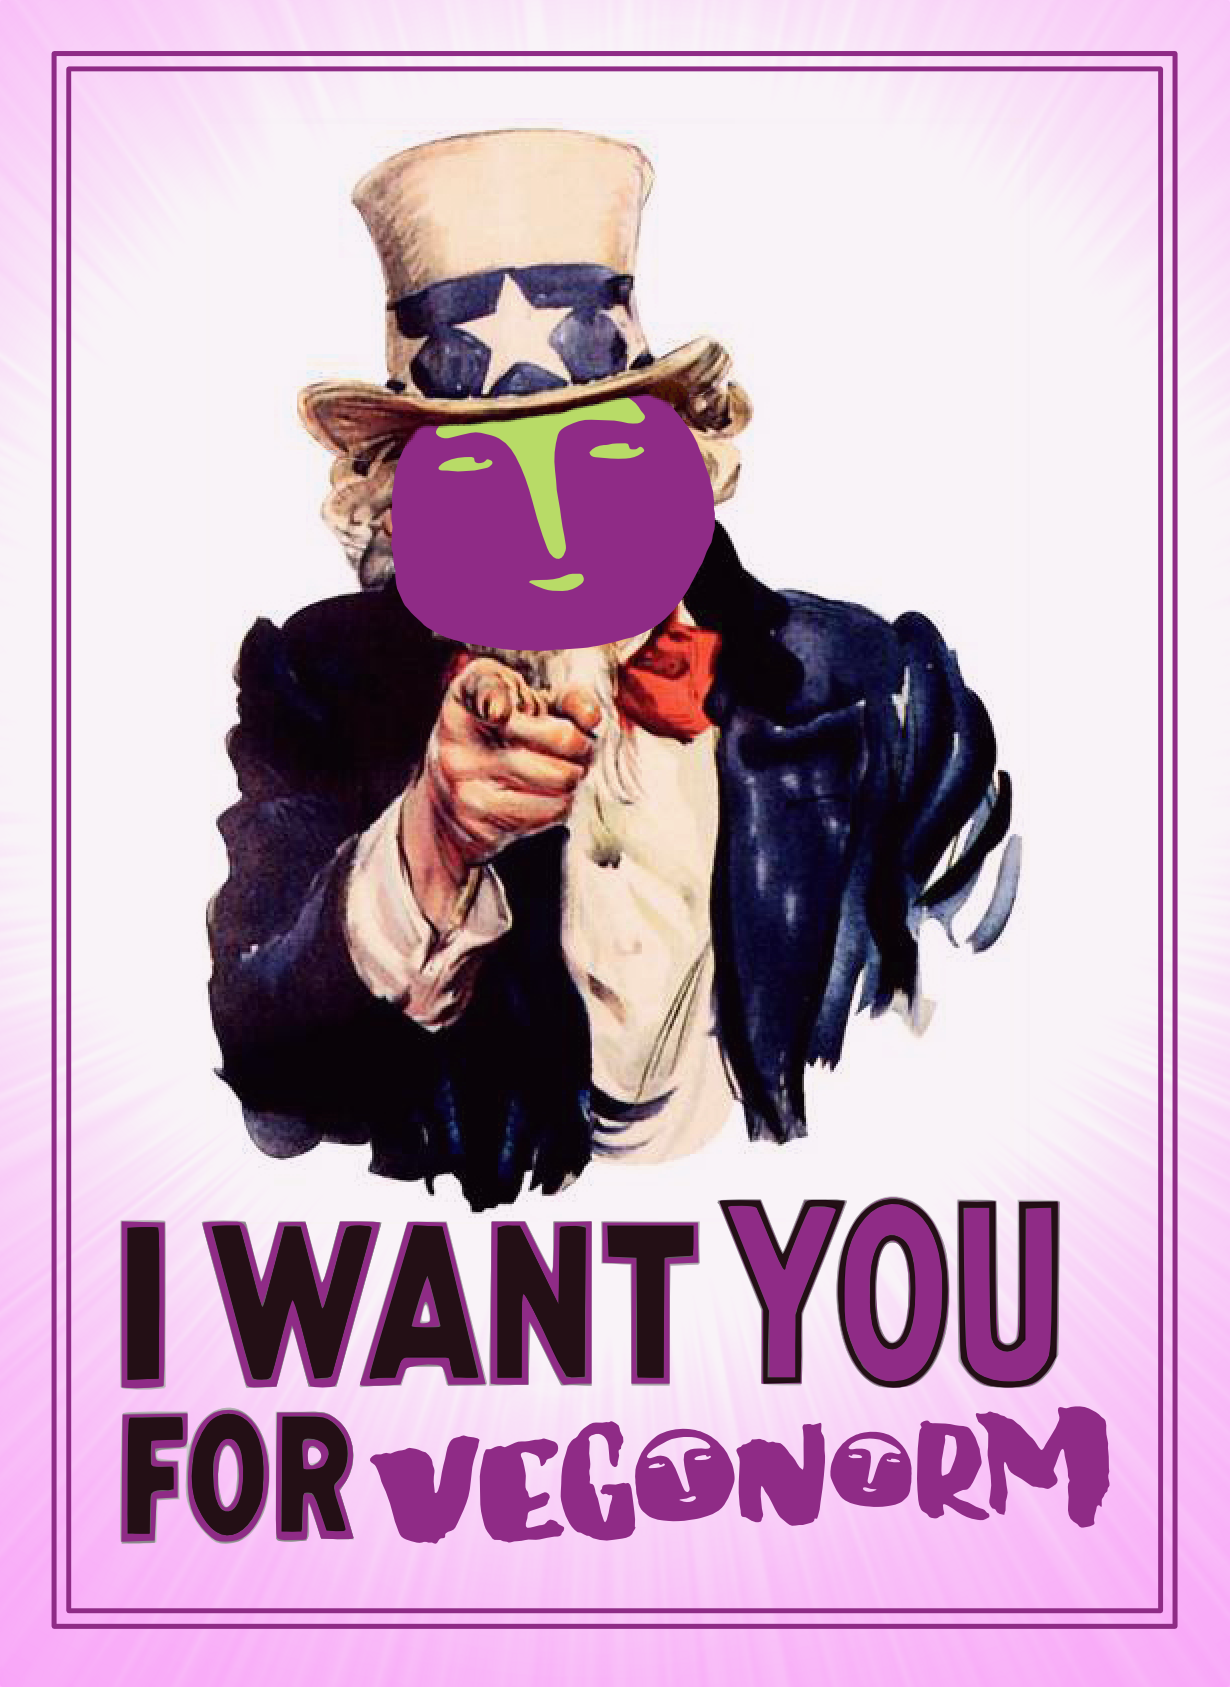 Vegomårran wants you